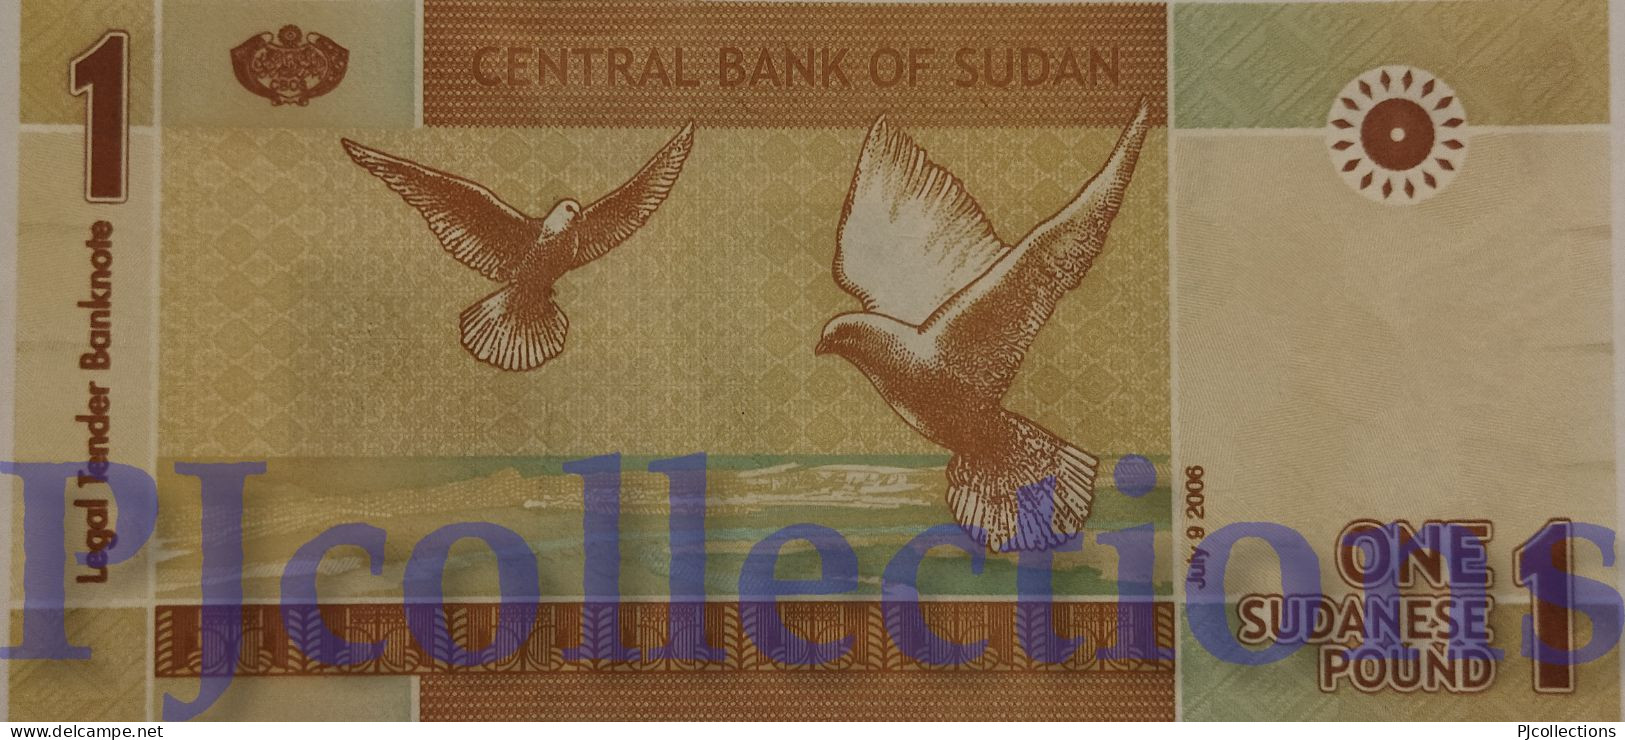 SUDAN 1 DINAR 2006 PICK 64 UNC LOW AND GOOD SERIAL NUMBER "AA00015015" - Soudan